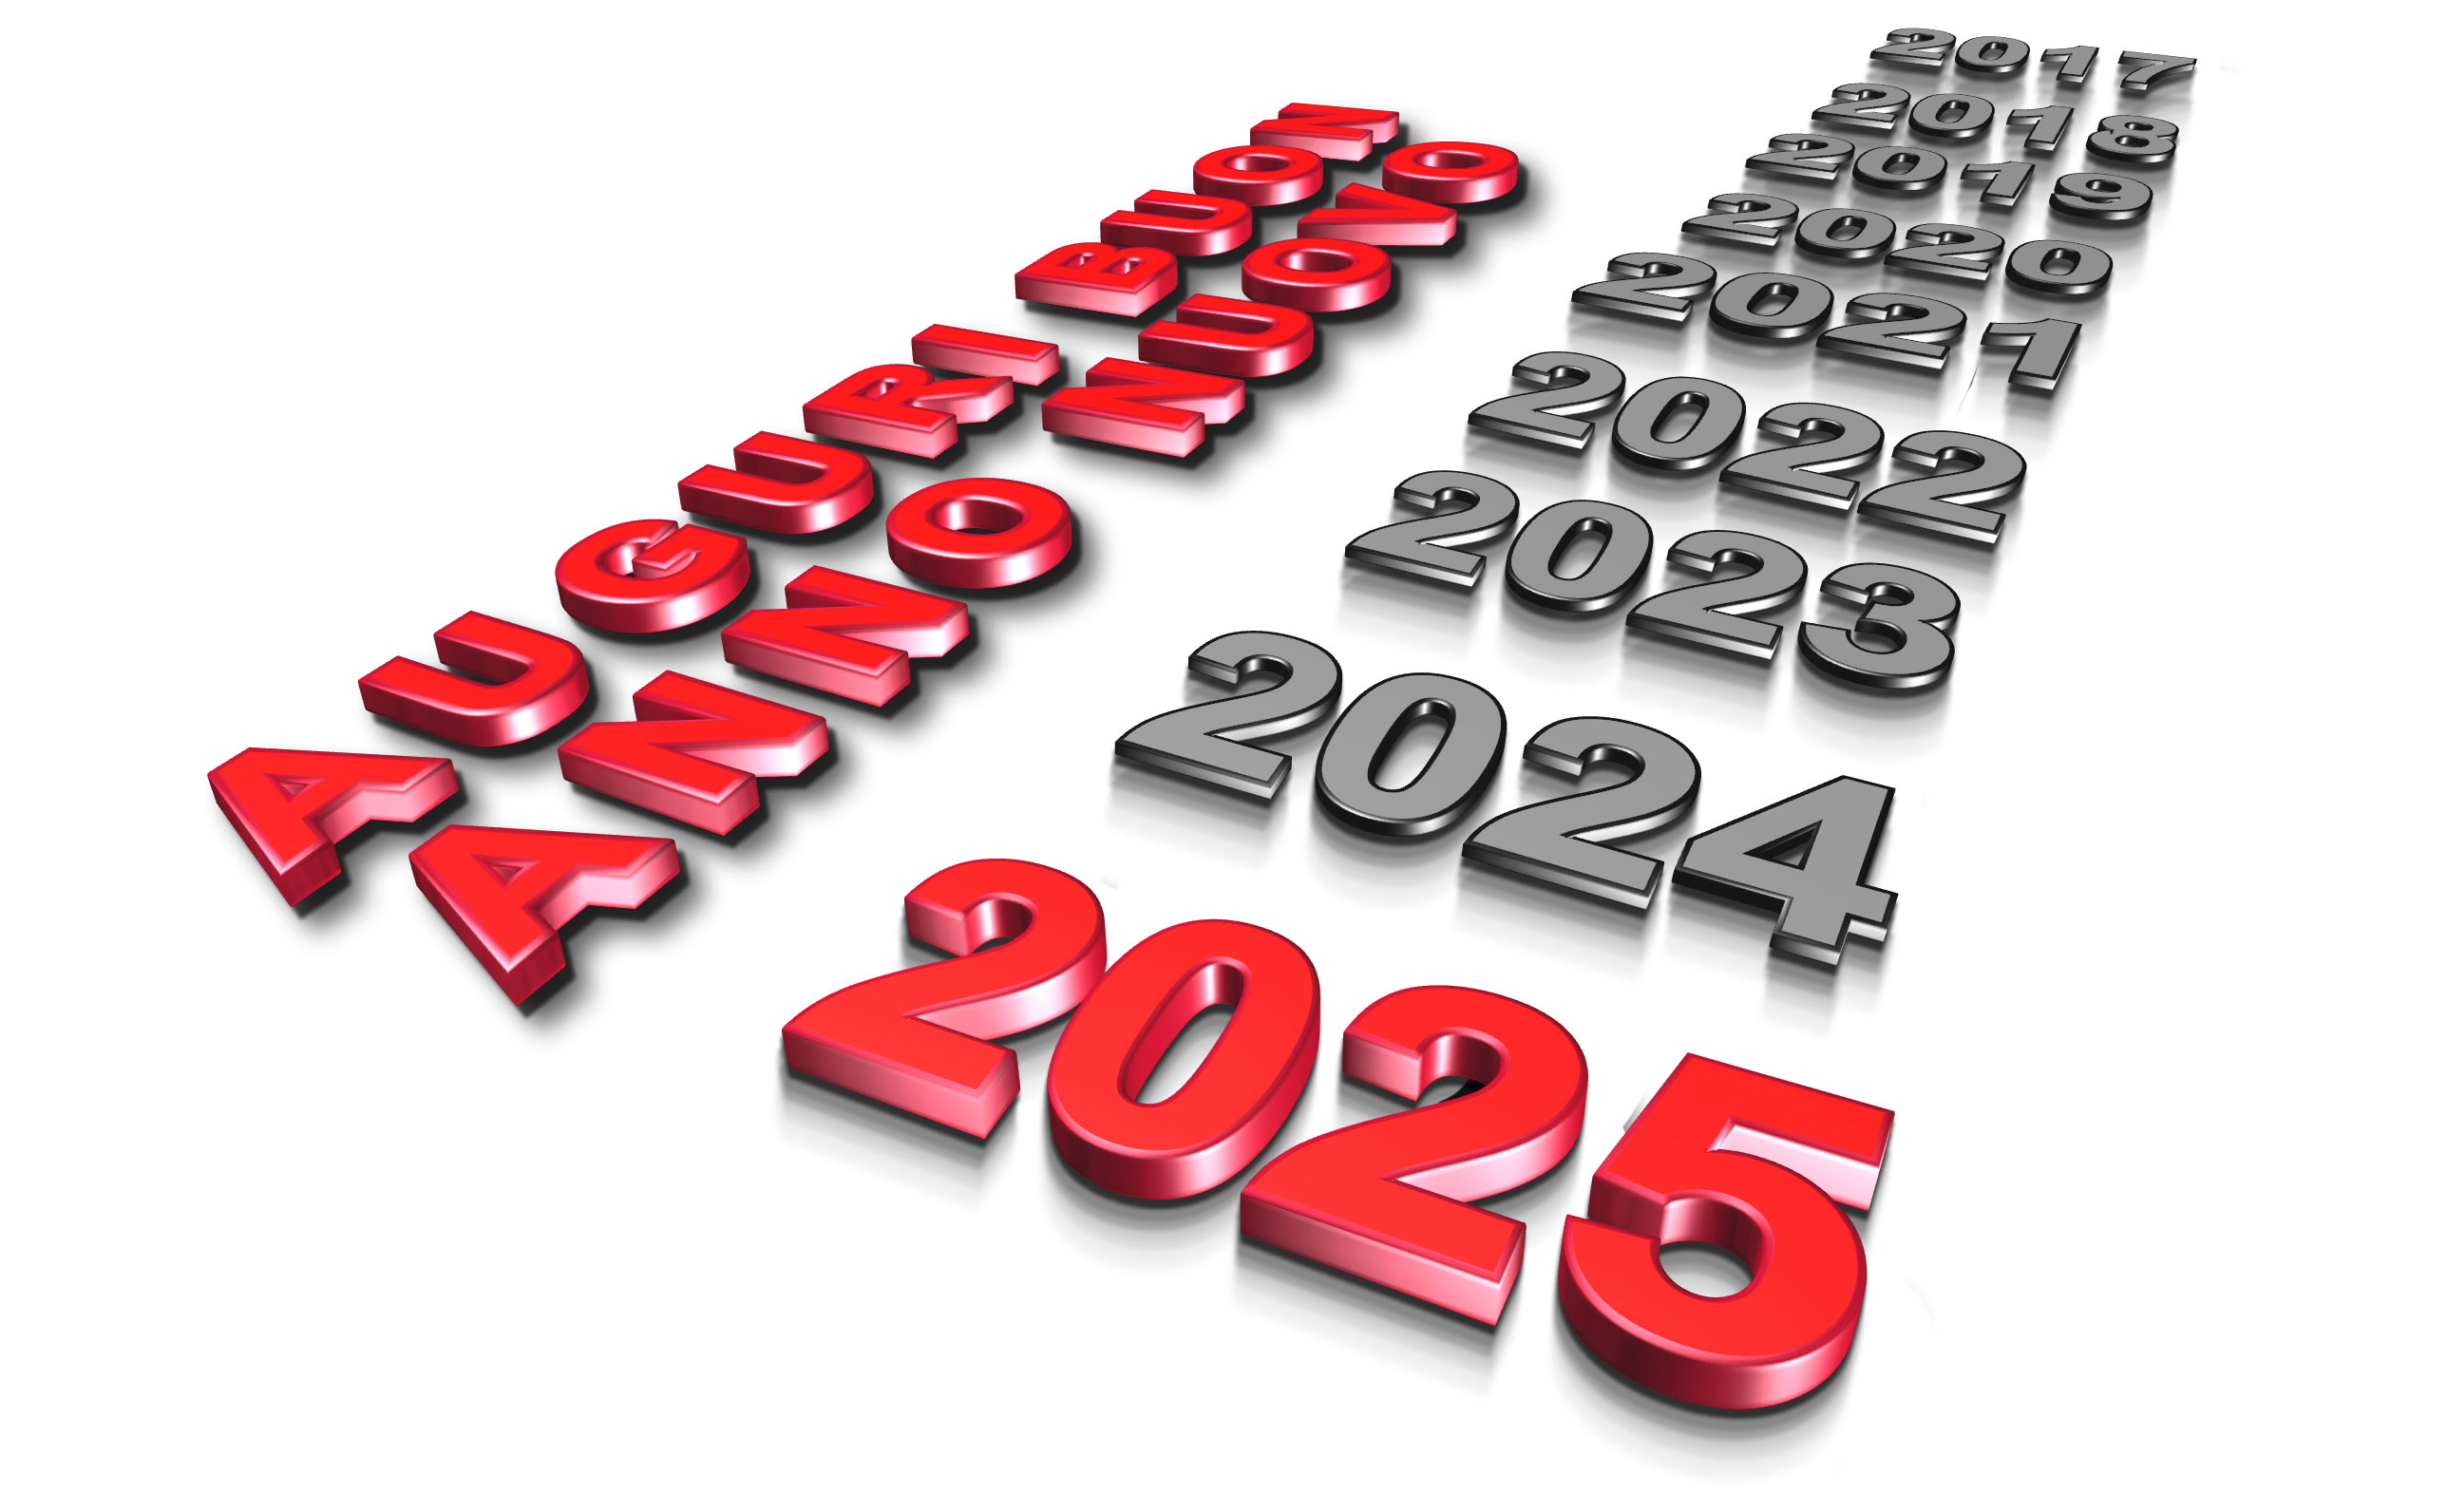 Immagine Buon anno nuovo 2025 con tutti gli anni passati